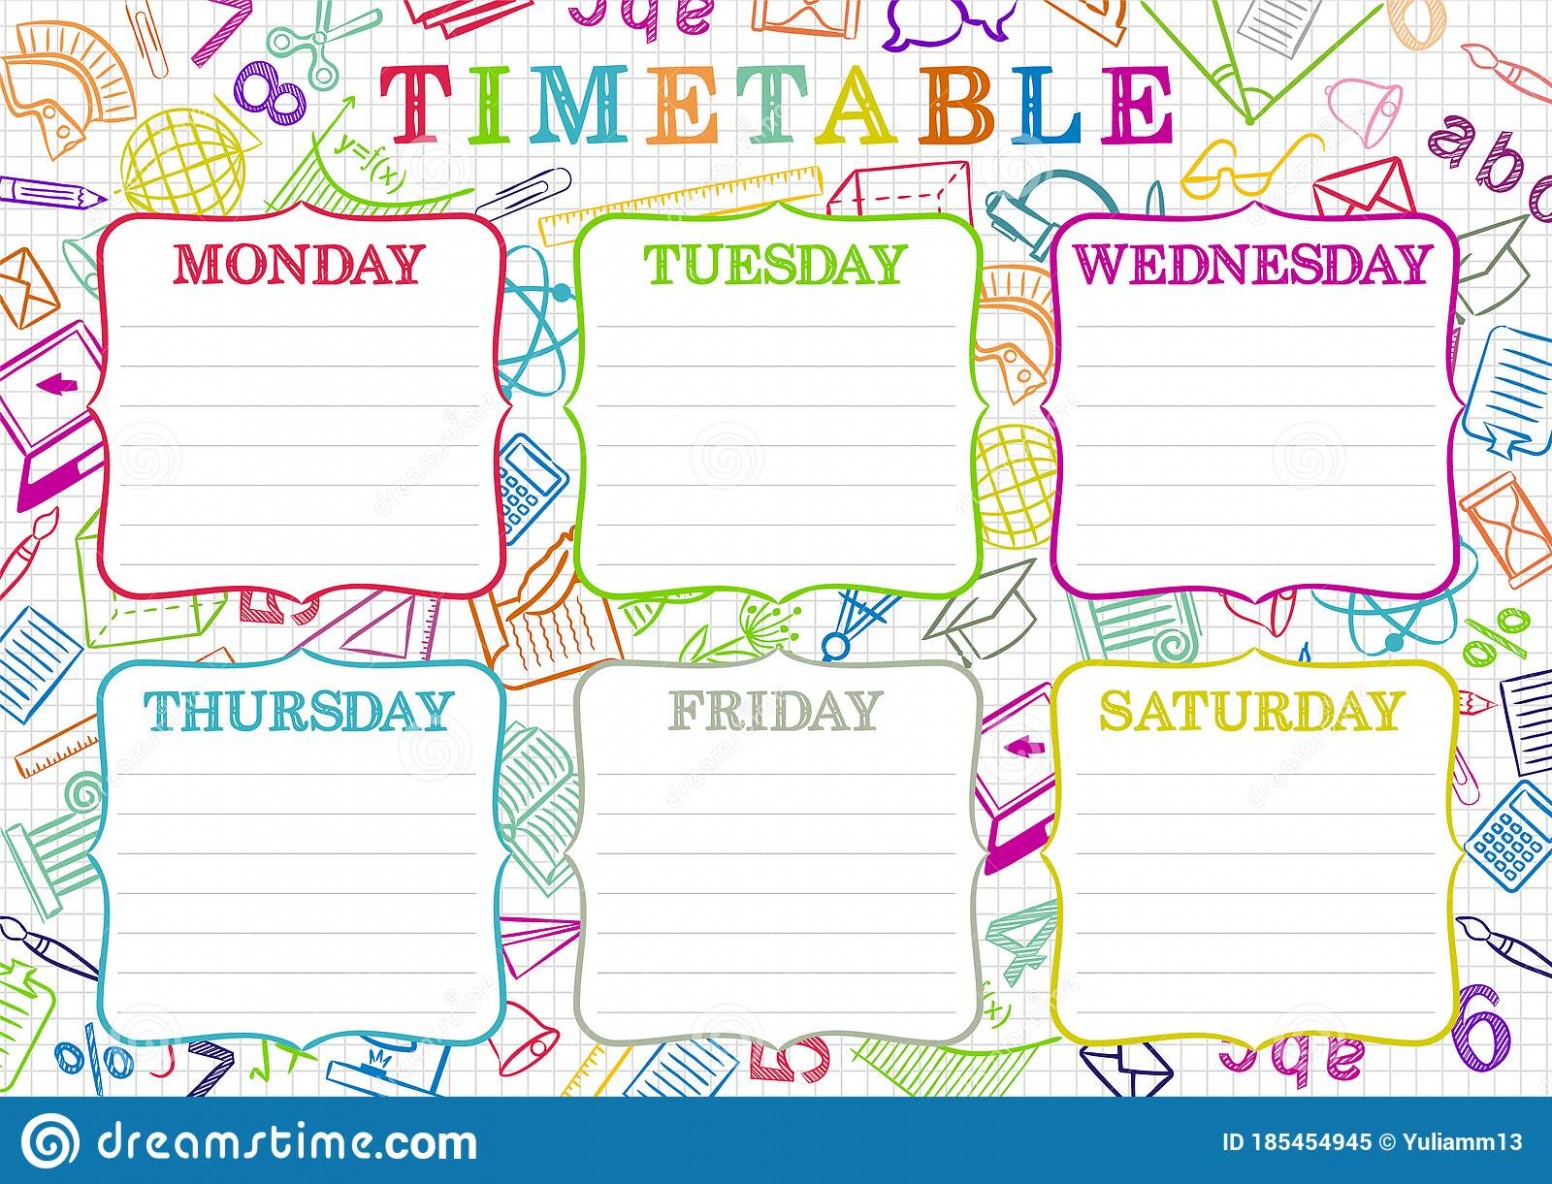 Printable 6 Day School Schedule Template Docs